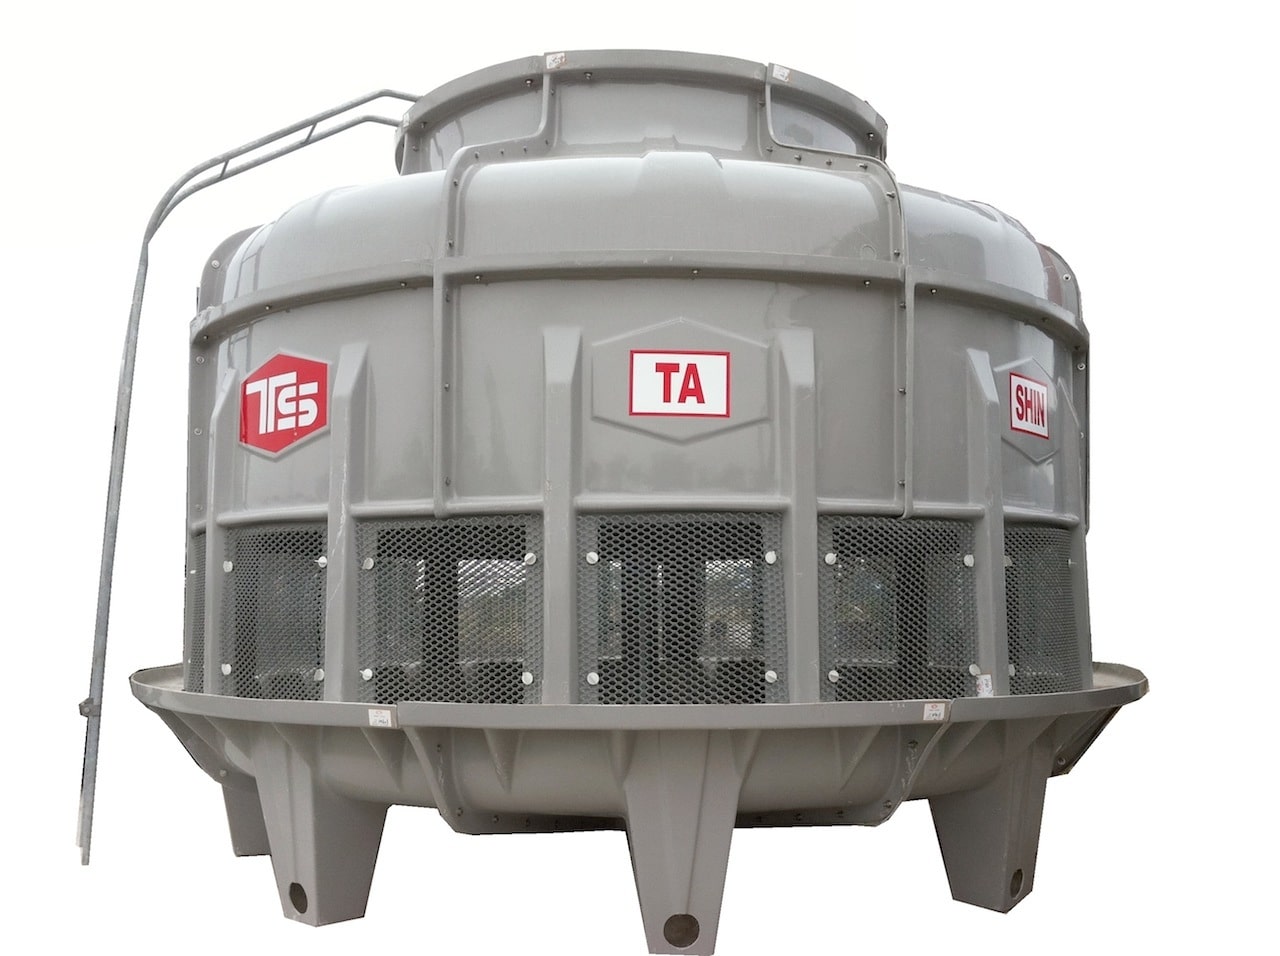 Tháp giải nhiệt Tashin TSC 300RT